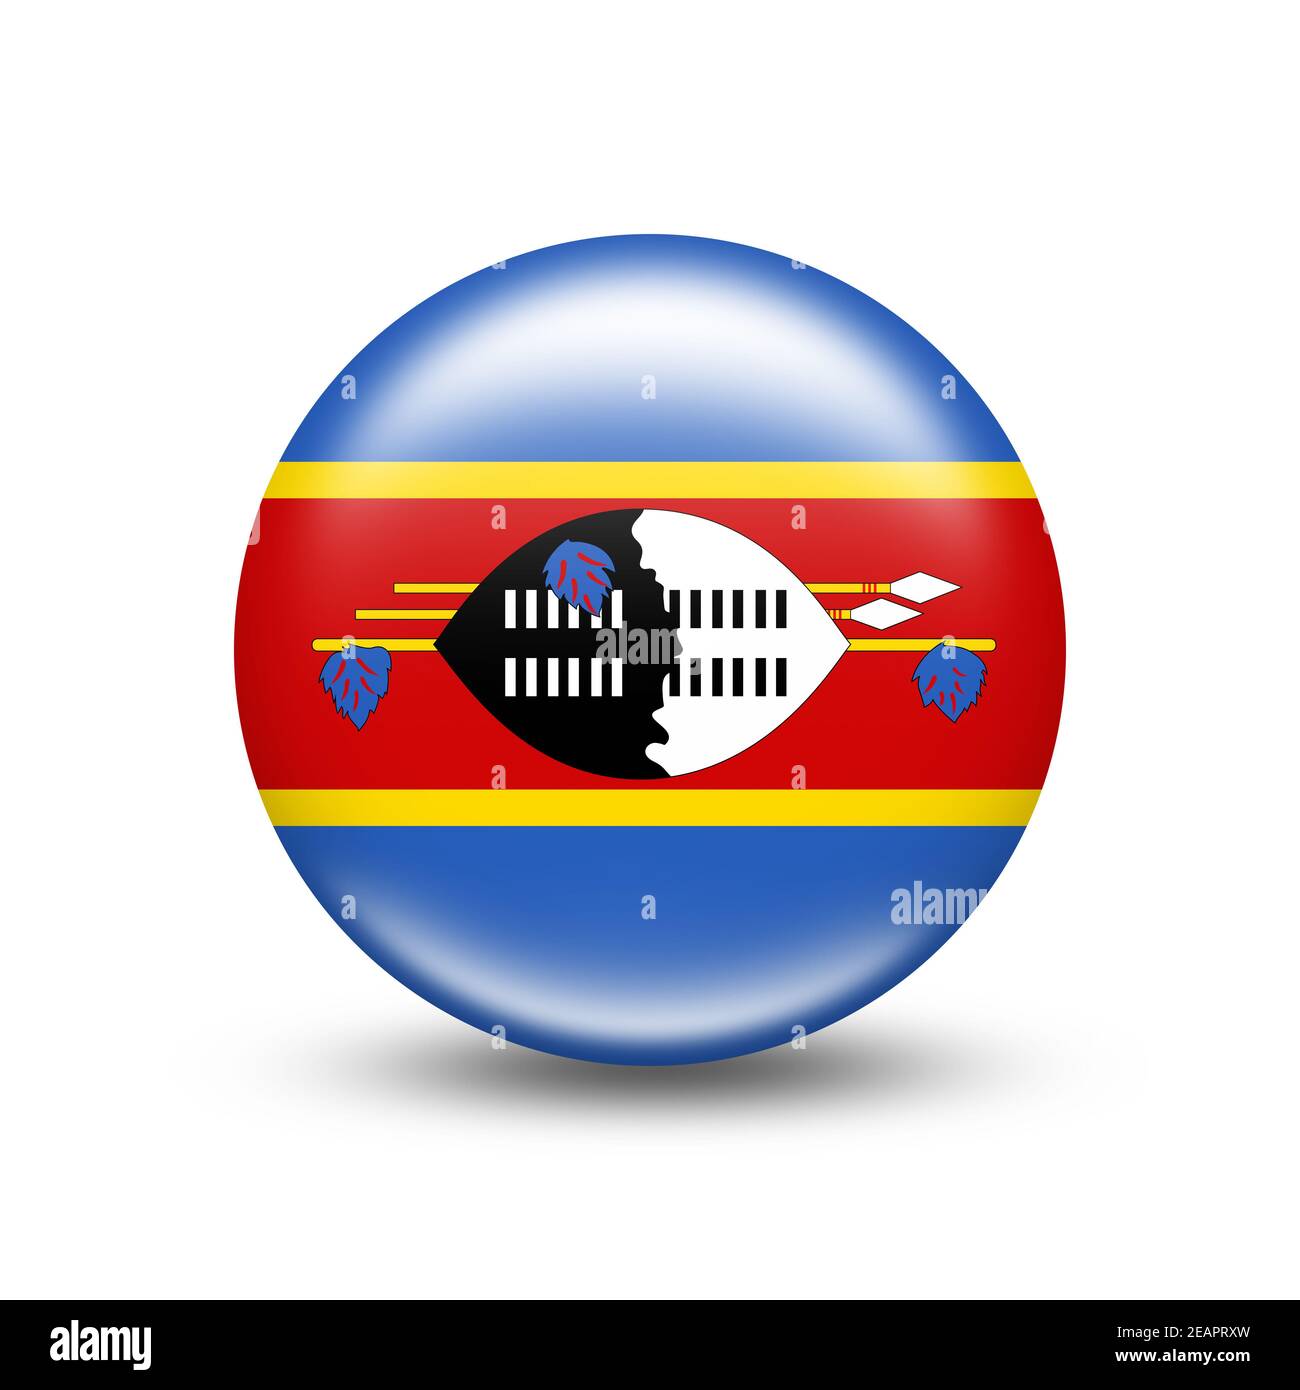 Swazilandia bandera del país en la esfera con sombra blanca Foto de stock